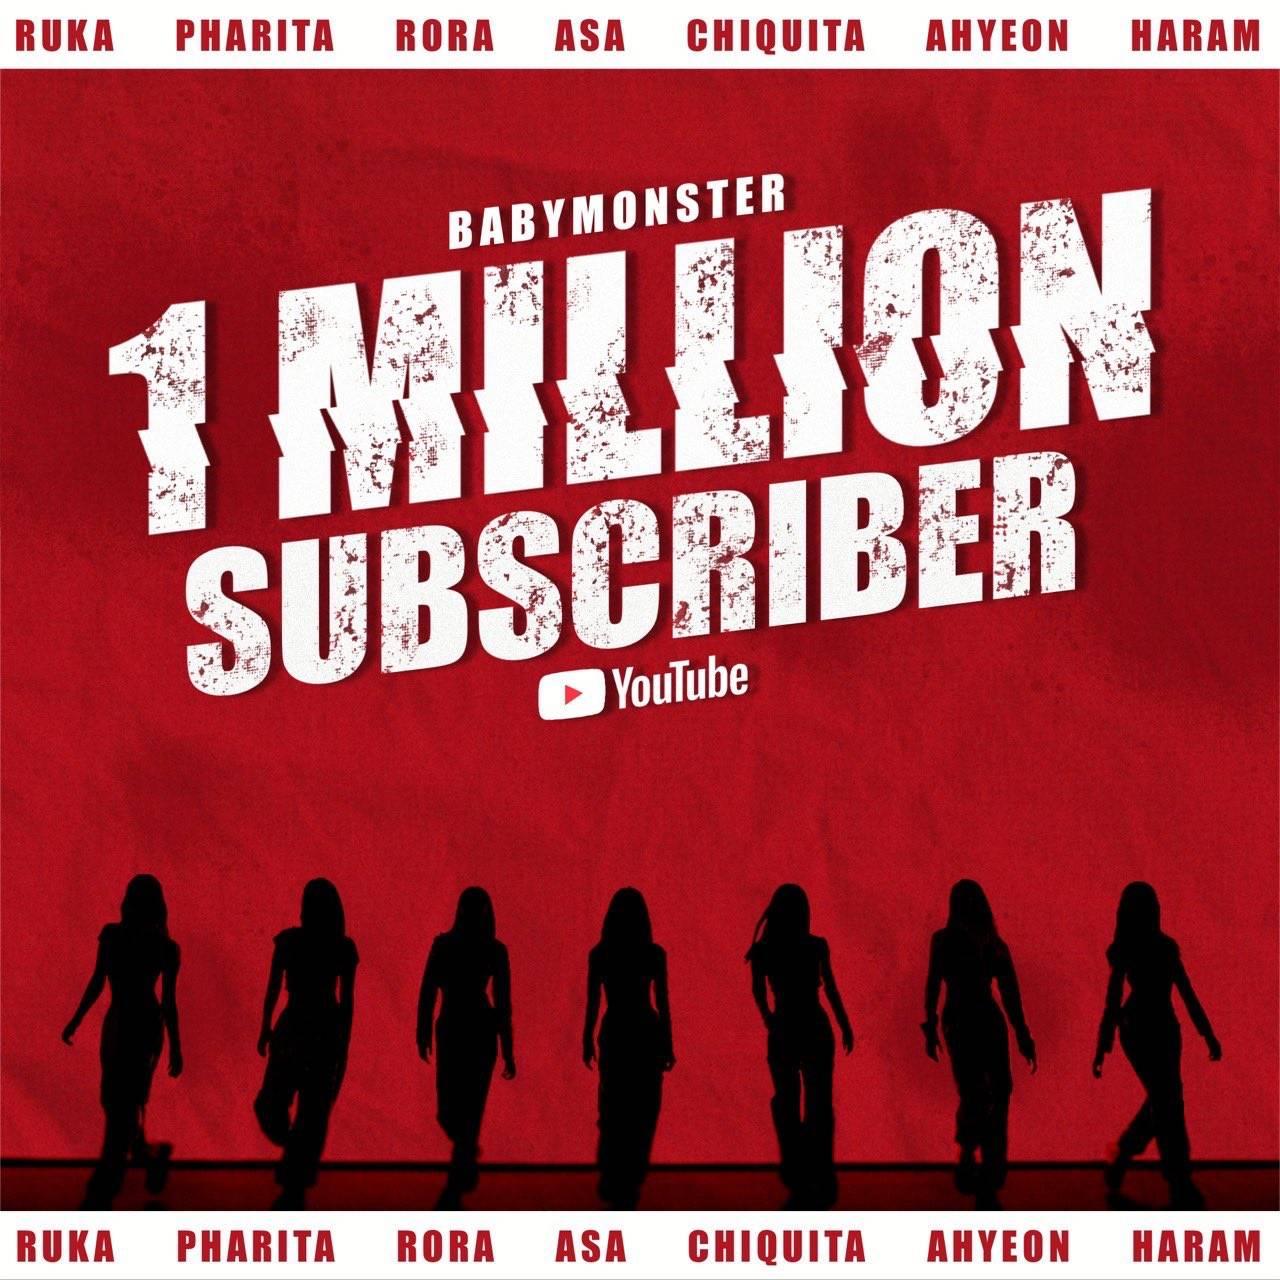 ล้านแตก 💥 เบม่อนมีผู้ติดตามบน Youtube ทะลุ 1 ล้าน Subscribers แล้วววว 🥳🥳🥳 Pantip 